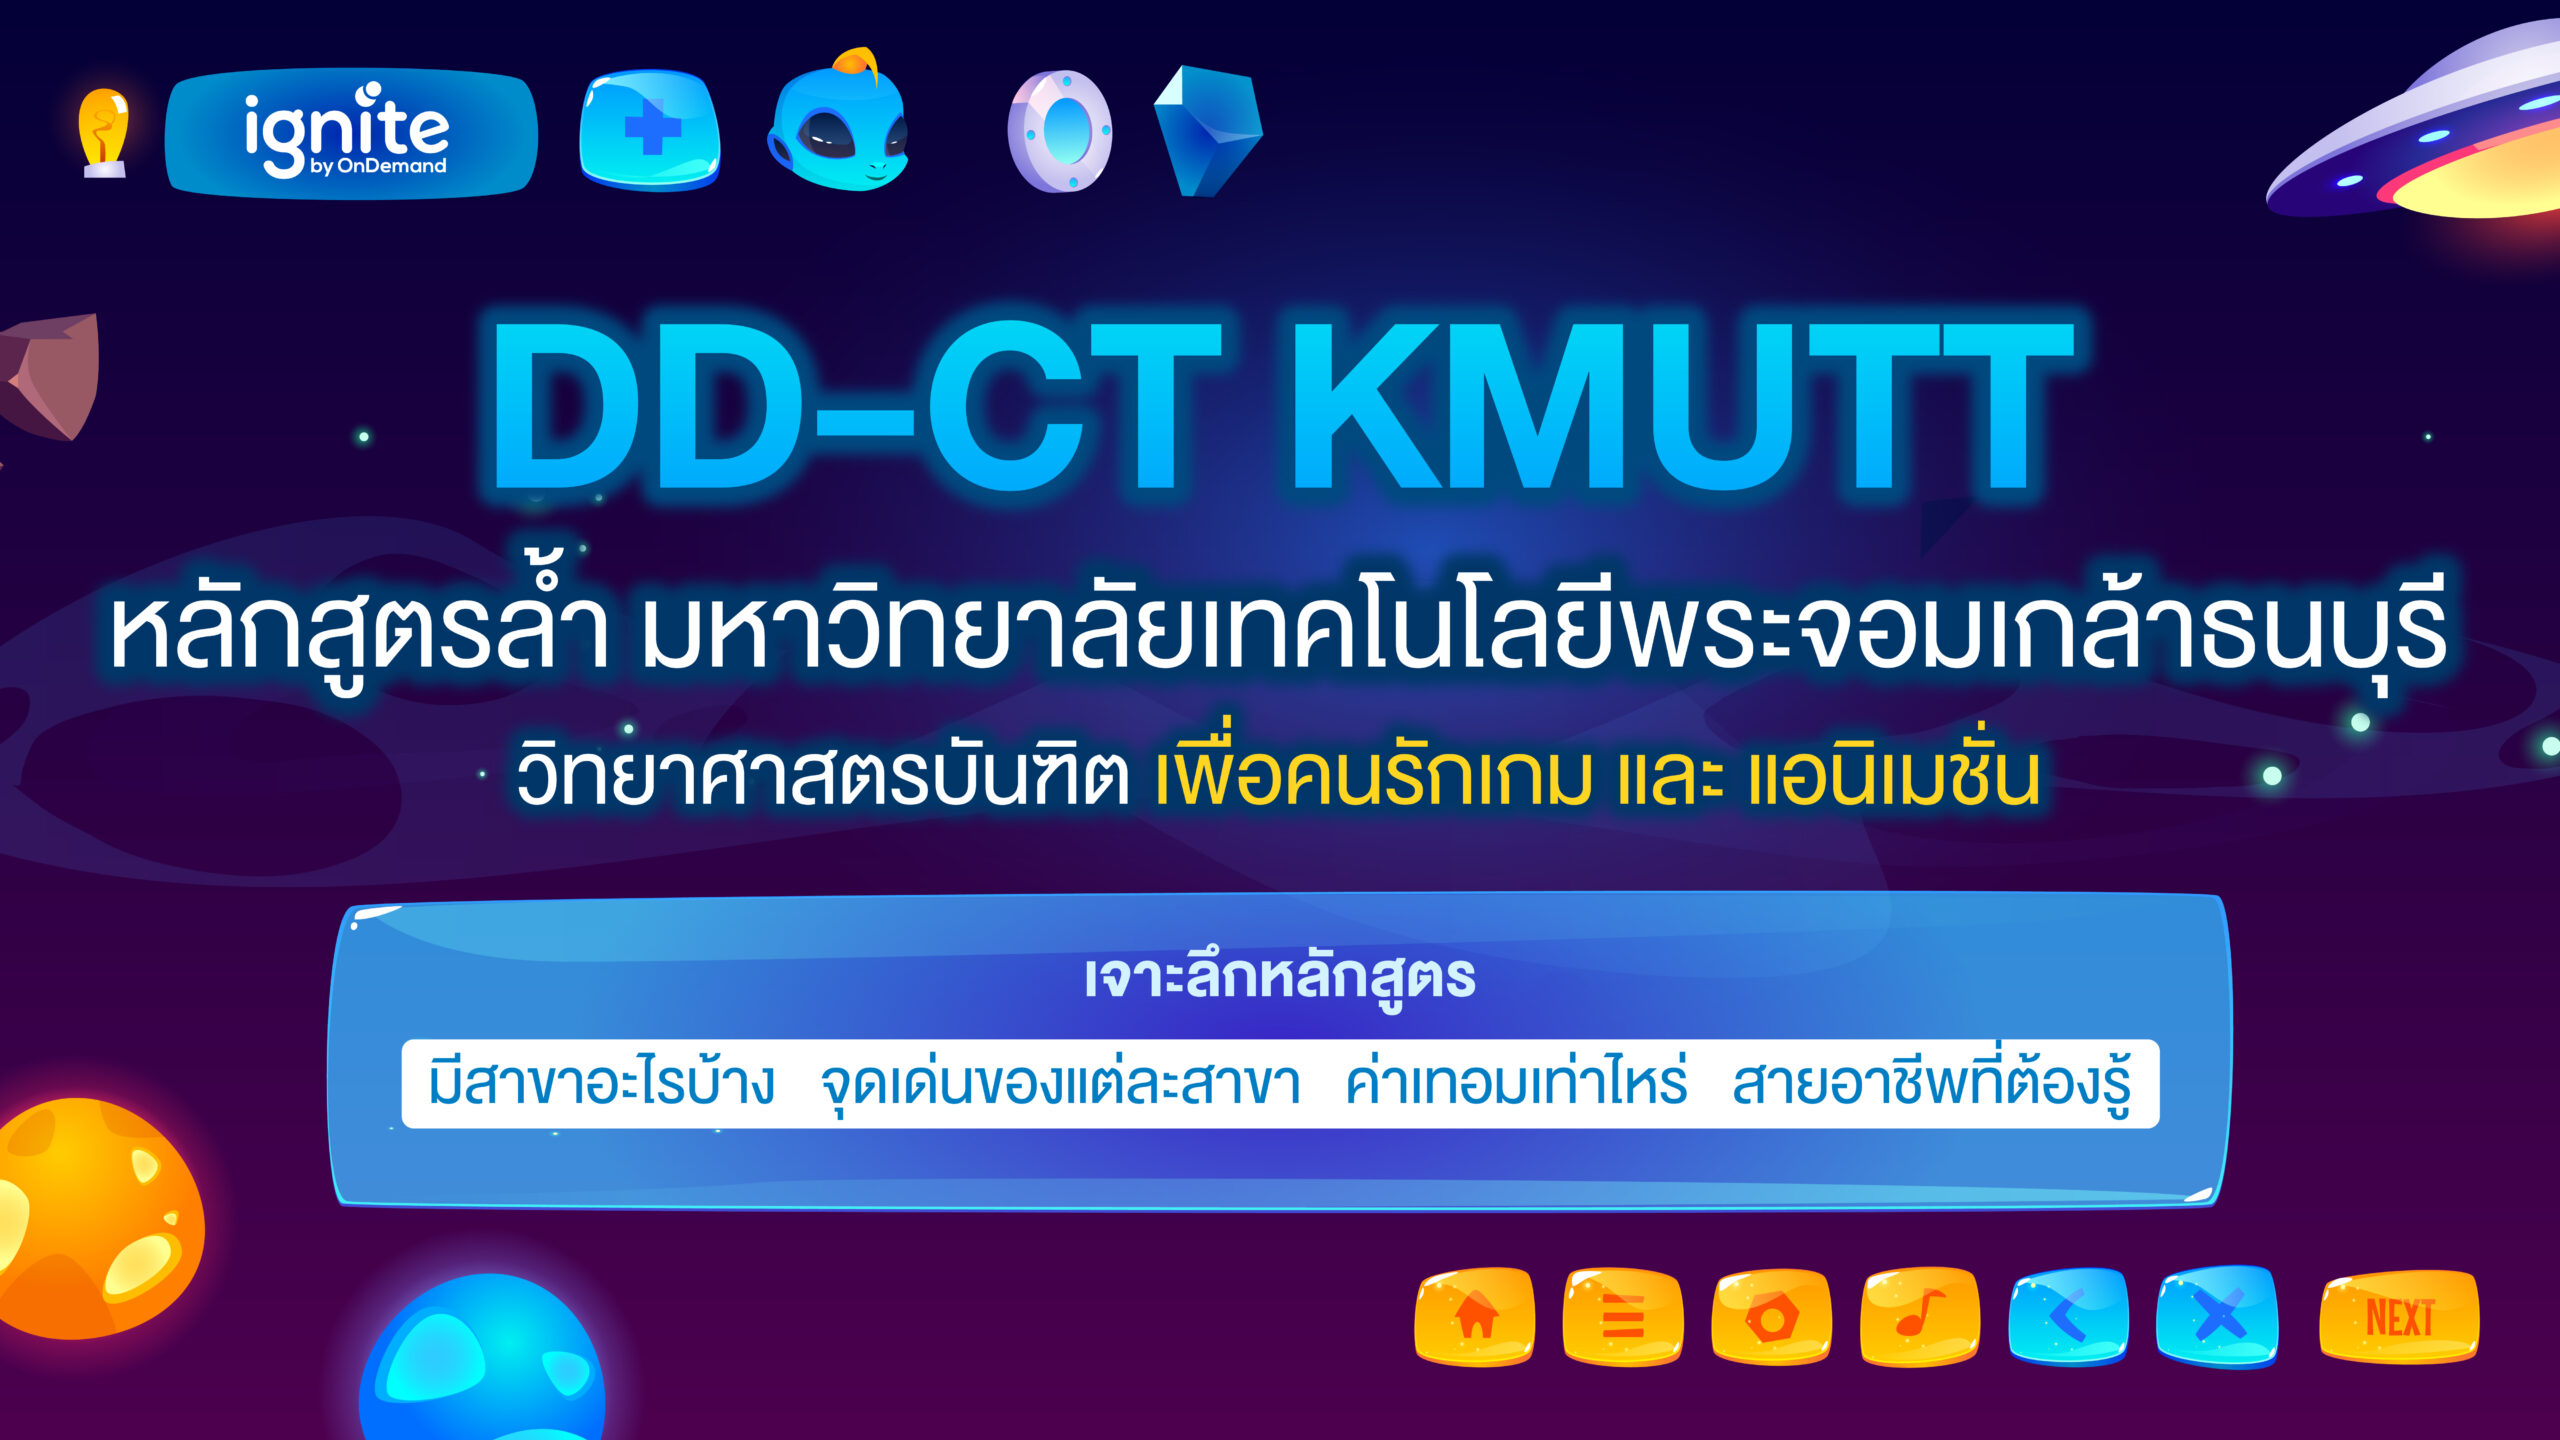 หลักสูตร DD-CT KMUTT - ignite by ondemand - banner